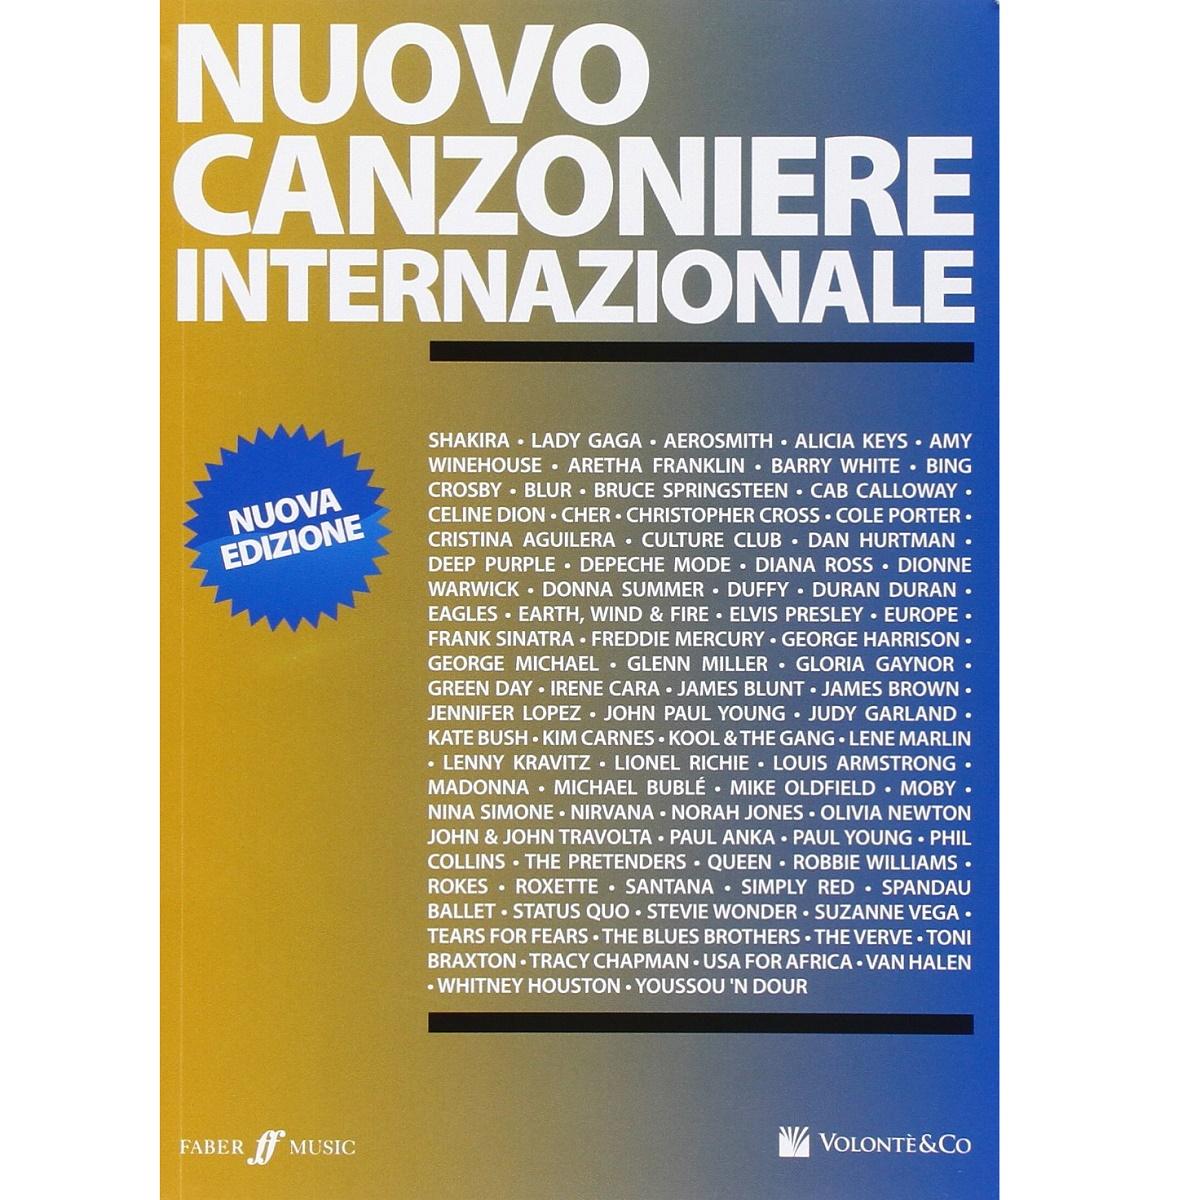 Nuovo canzoniere internazionale Nuova Edizione - Faber Music - VolontÃ¨ & Co